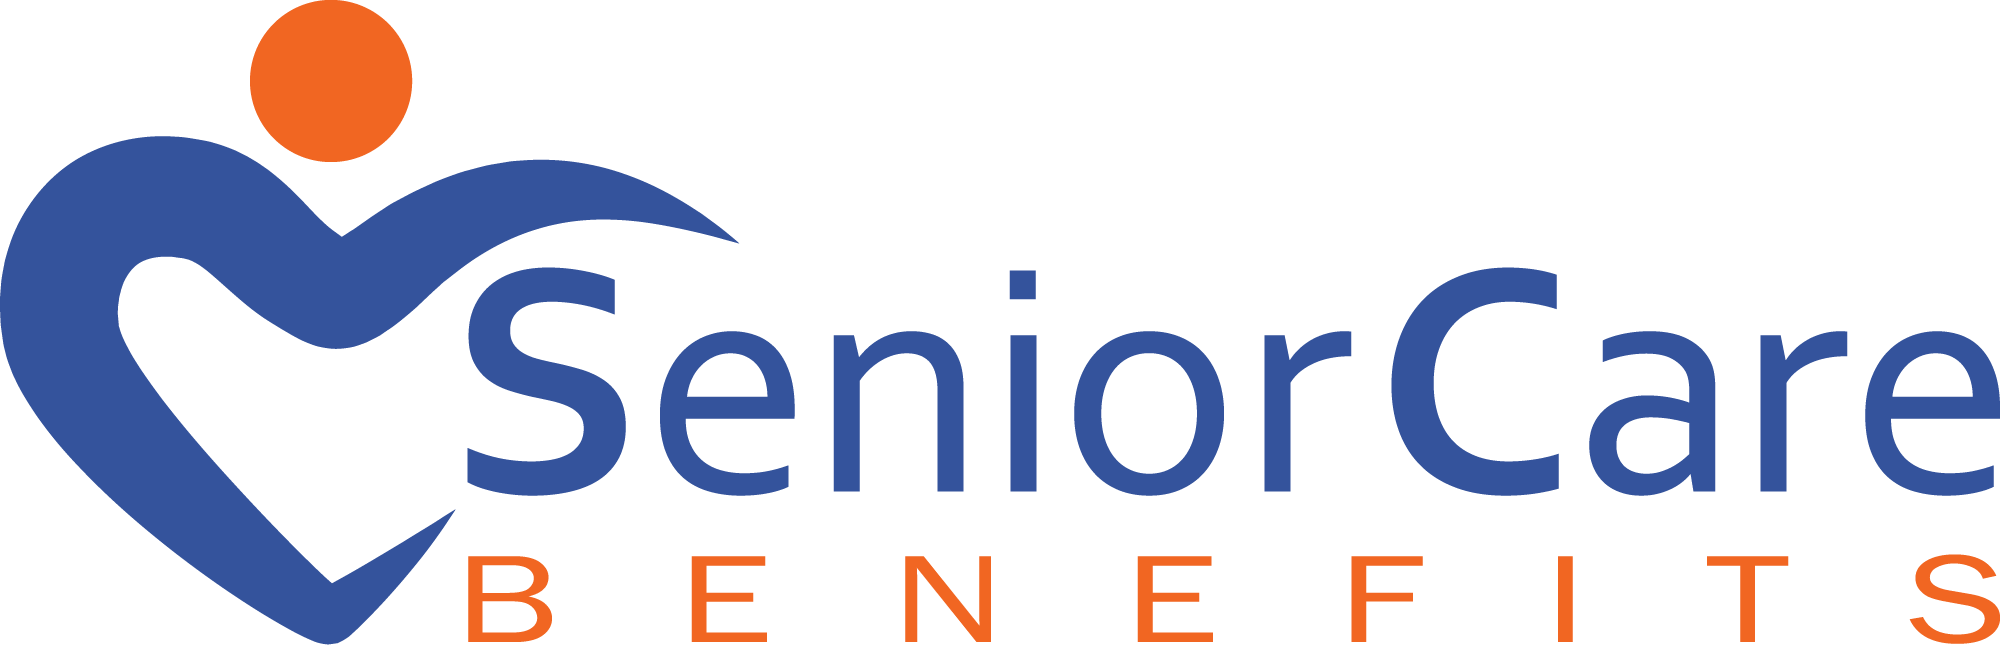 Senior Care Benefits logo